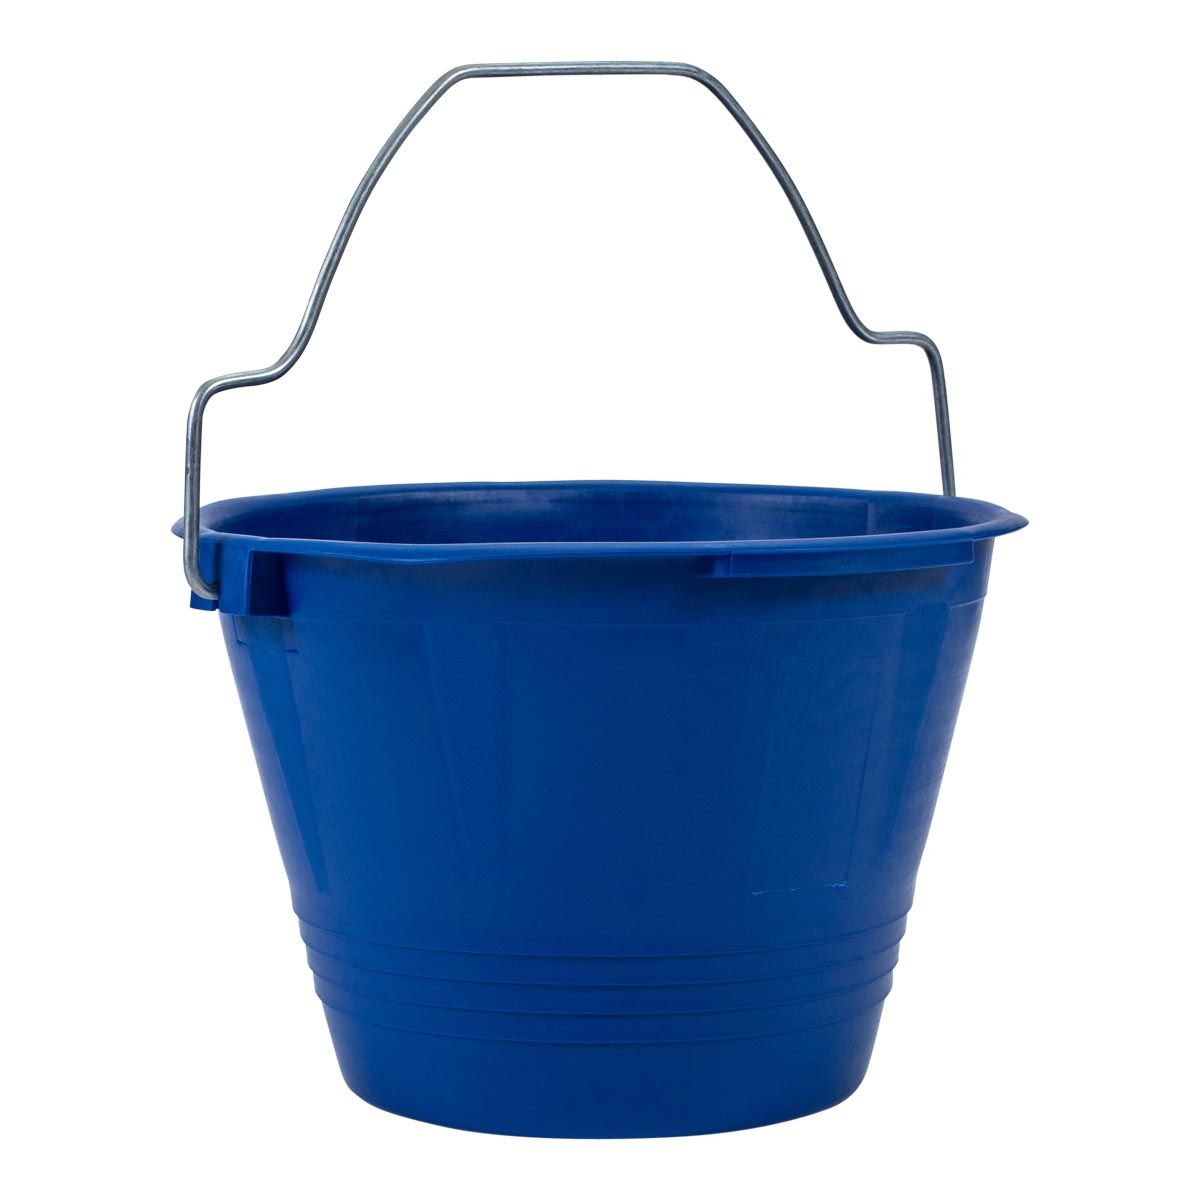 Masonry Bucket 15L OX-P110215 by Ox